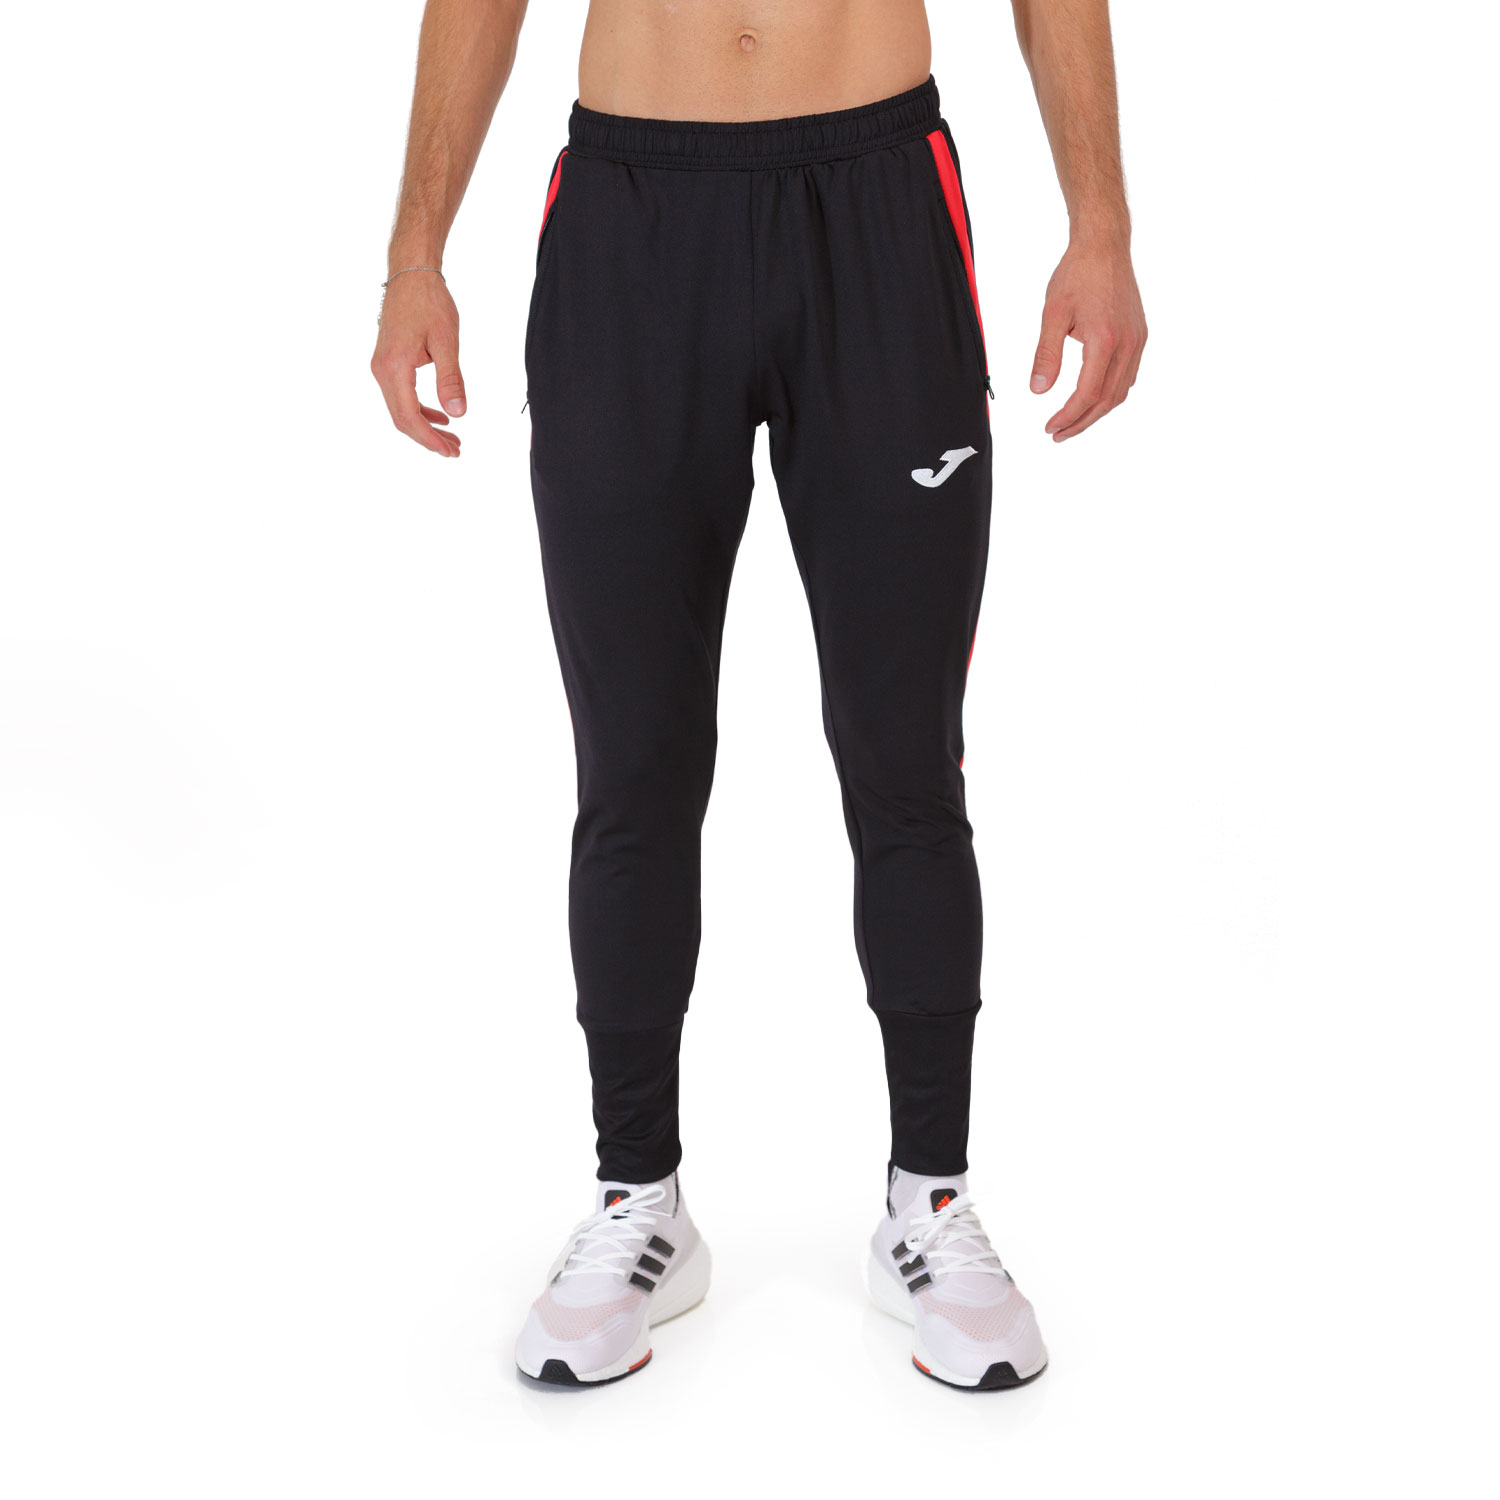 Aire acondicionado Perenne hielo Joma Elite VIII Pantalones de Running Hombre - Black/Red